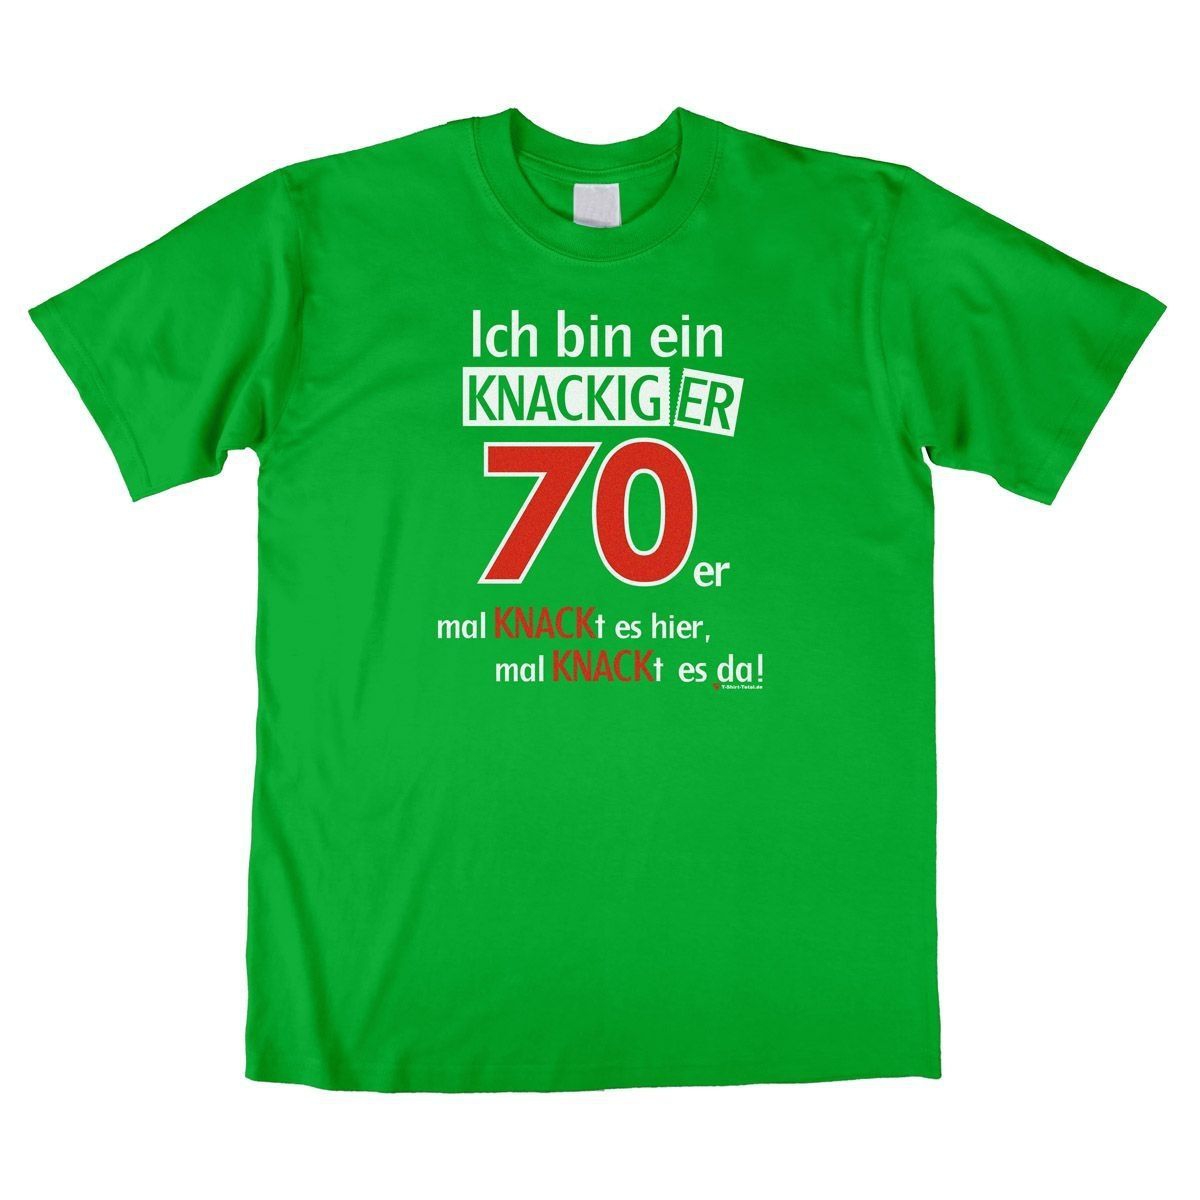 Knackiger 70er Unisex T-Shirt grün Large